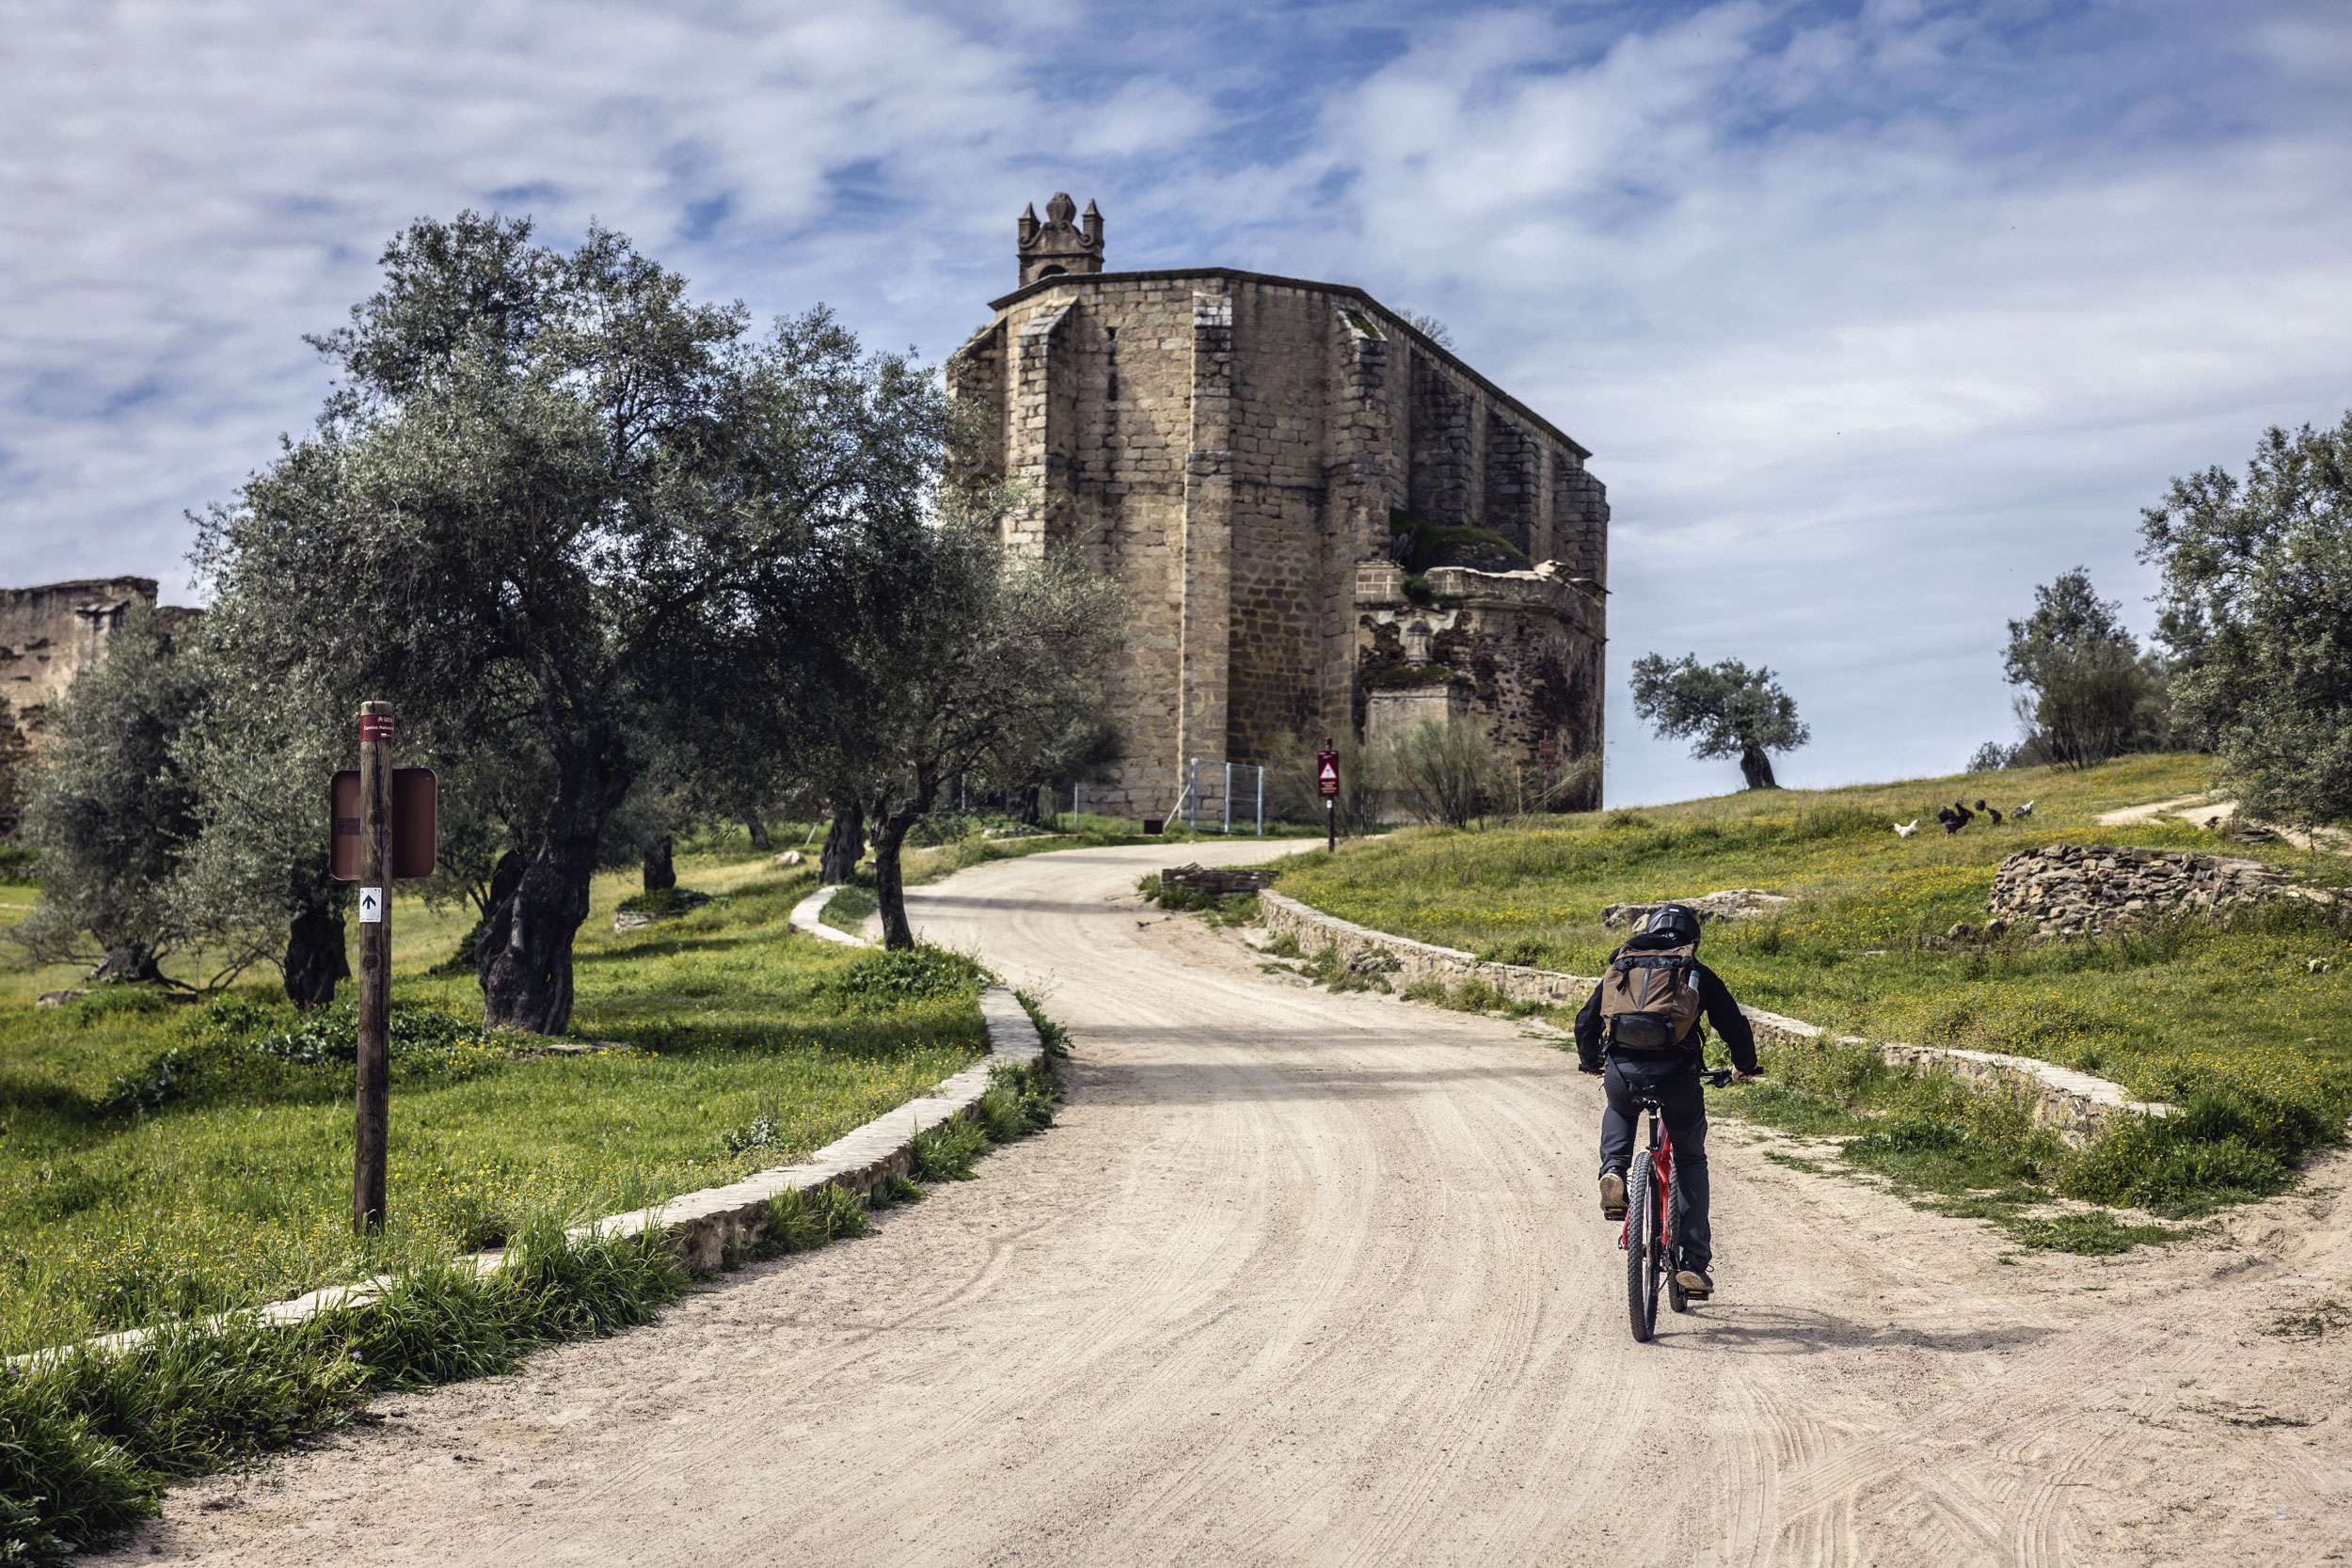 La Diputación de Cáceres crea un nuevo recurso de cicloturismo gracias al proyecto ‘Ciclosend_sur’